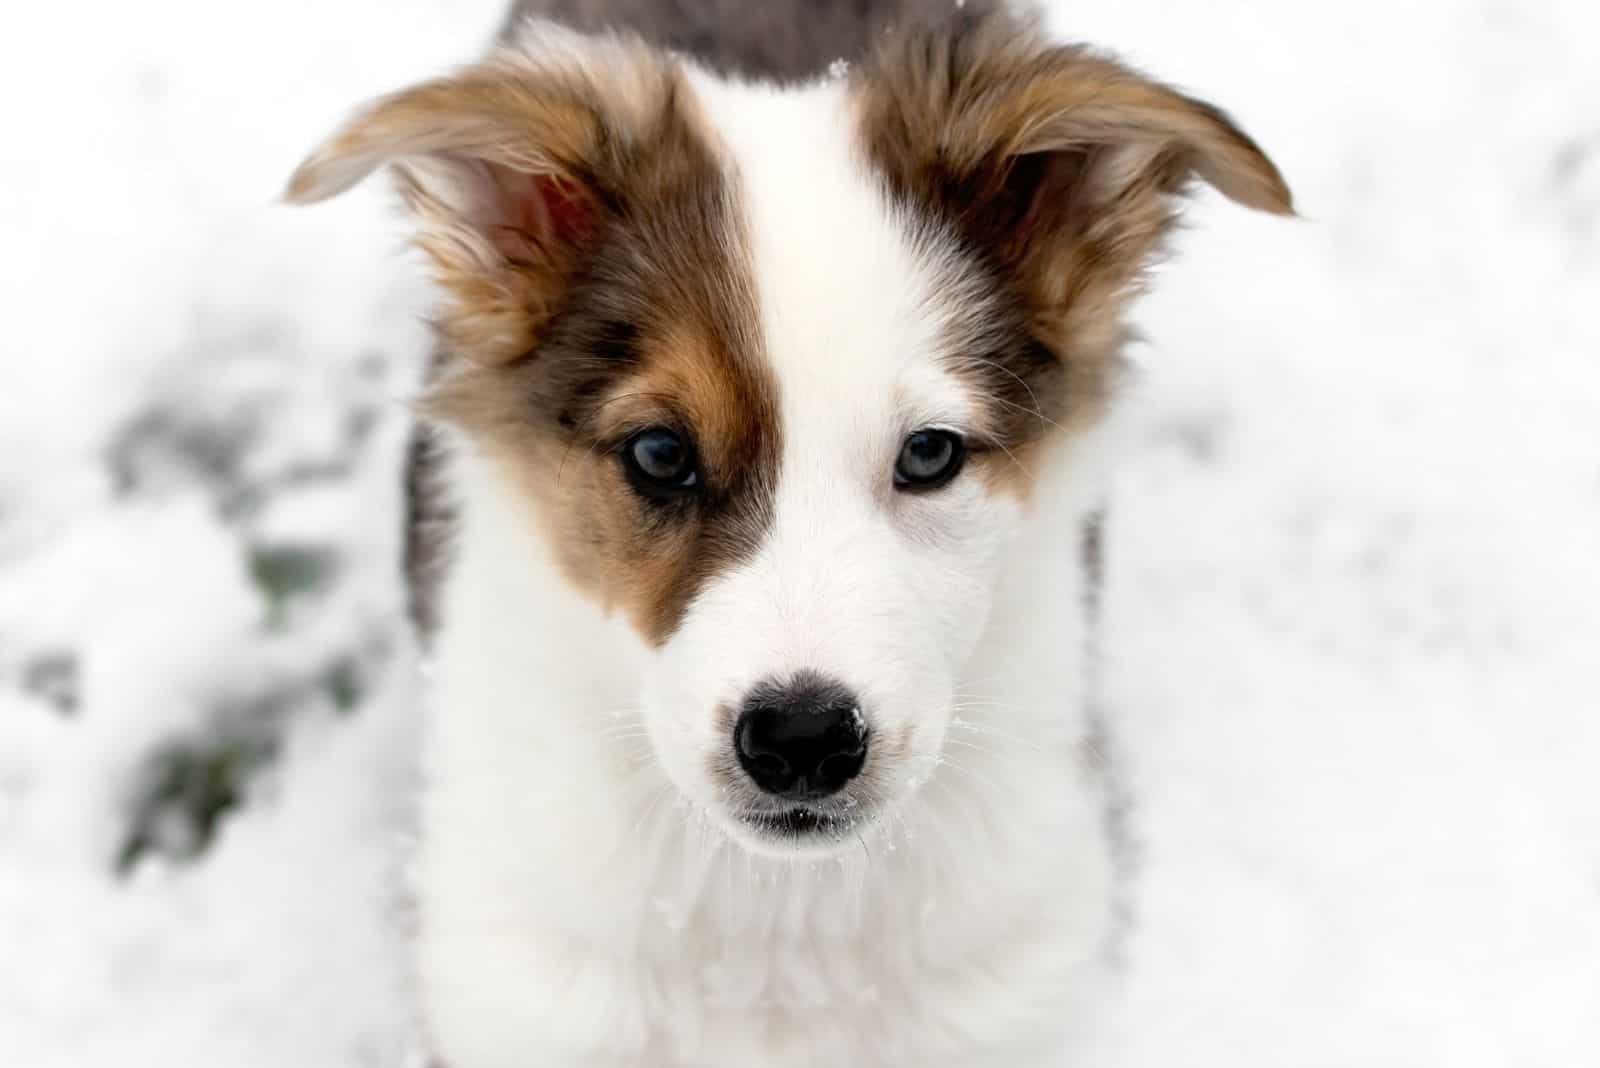 aussie mix dog puppy standing in the snow